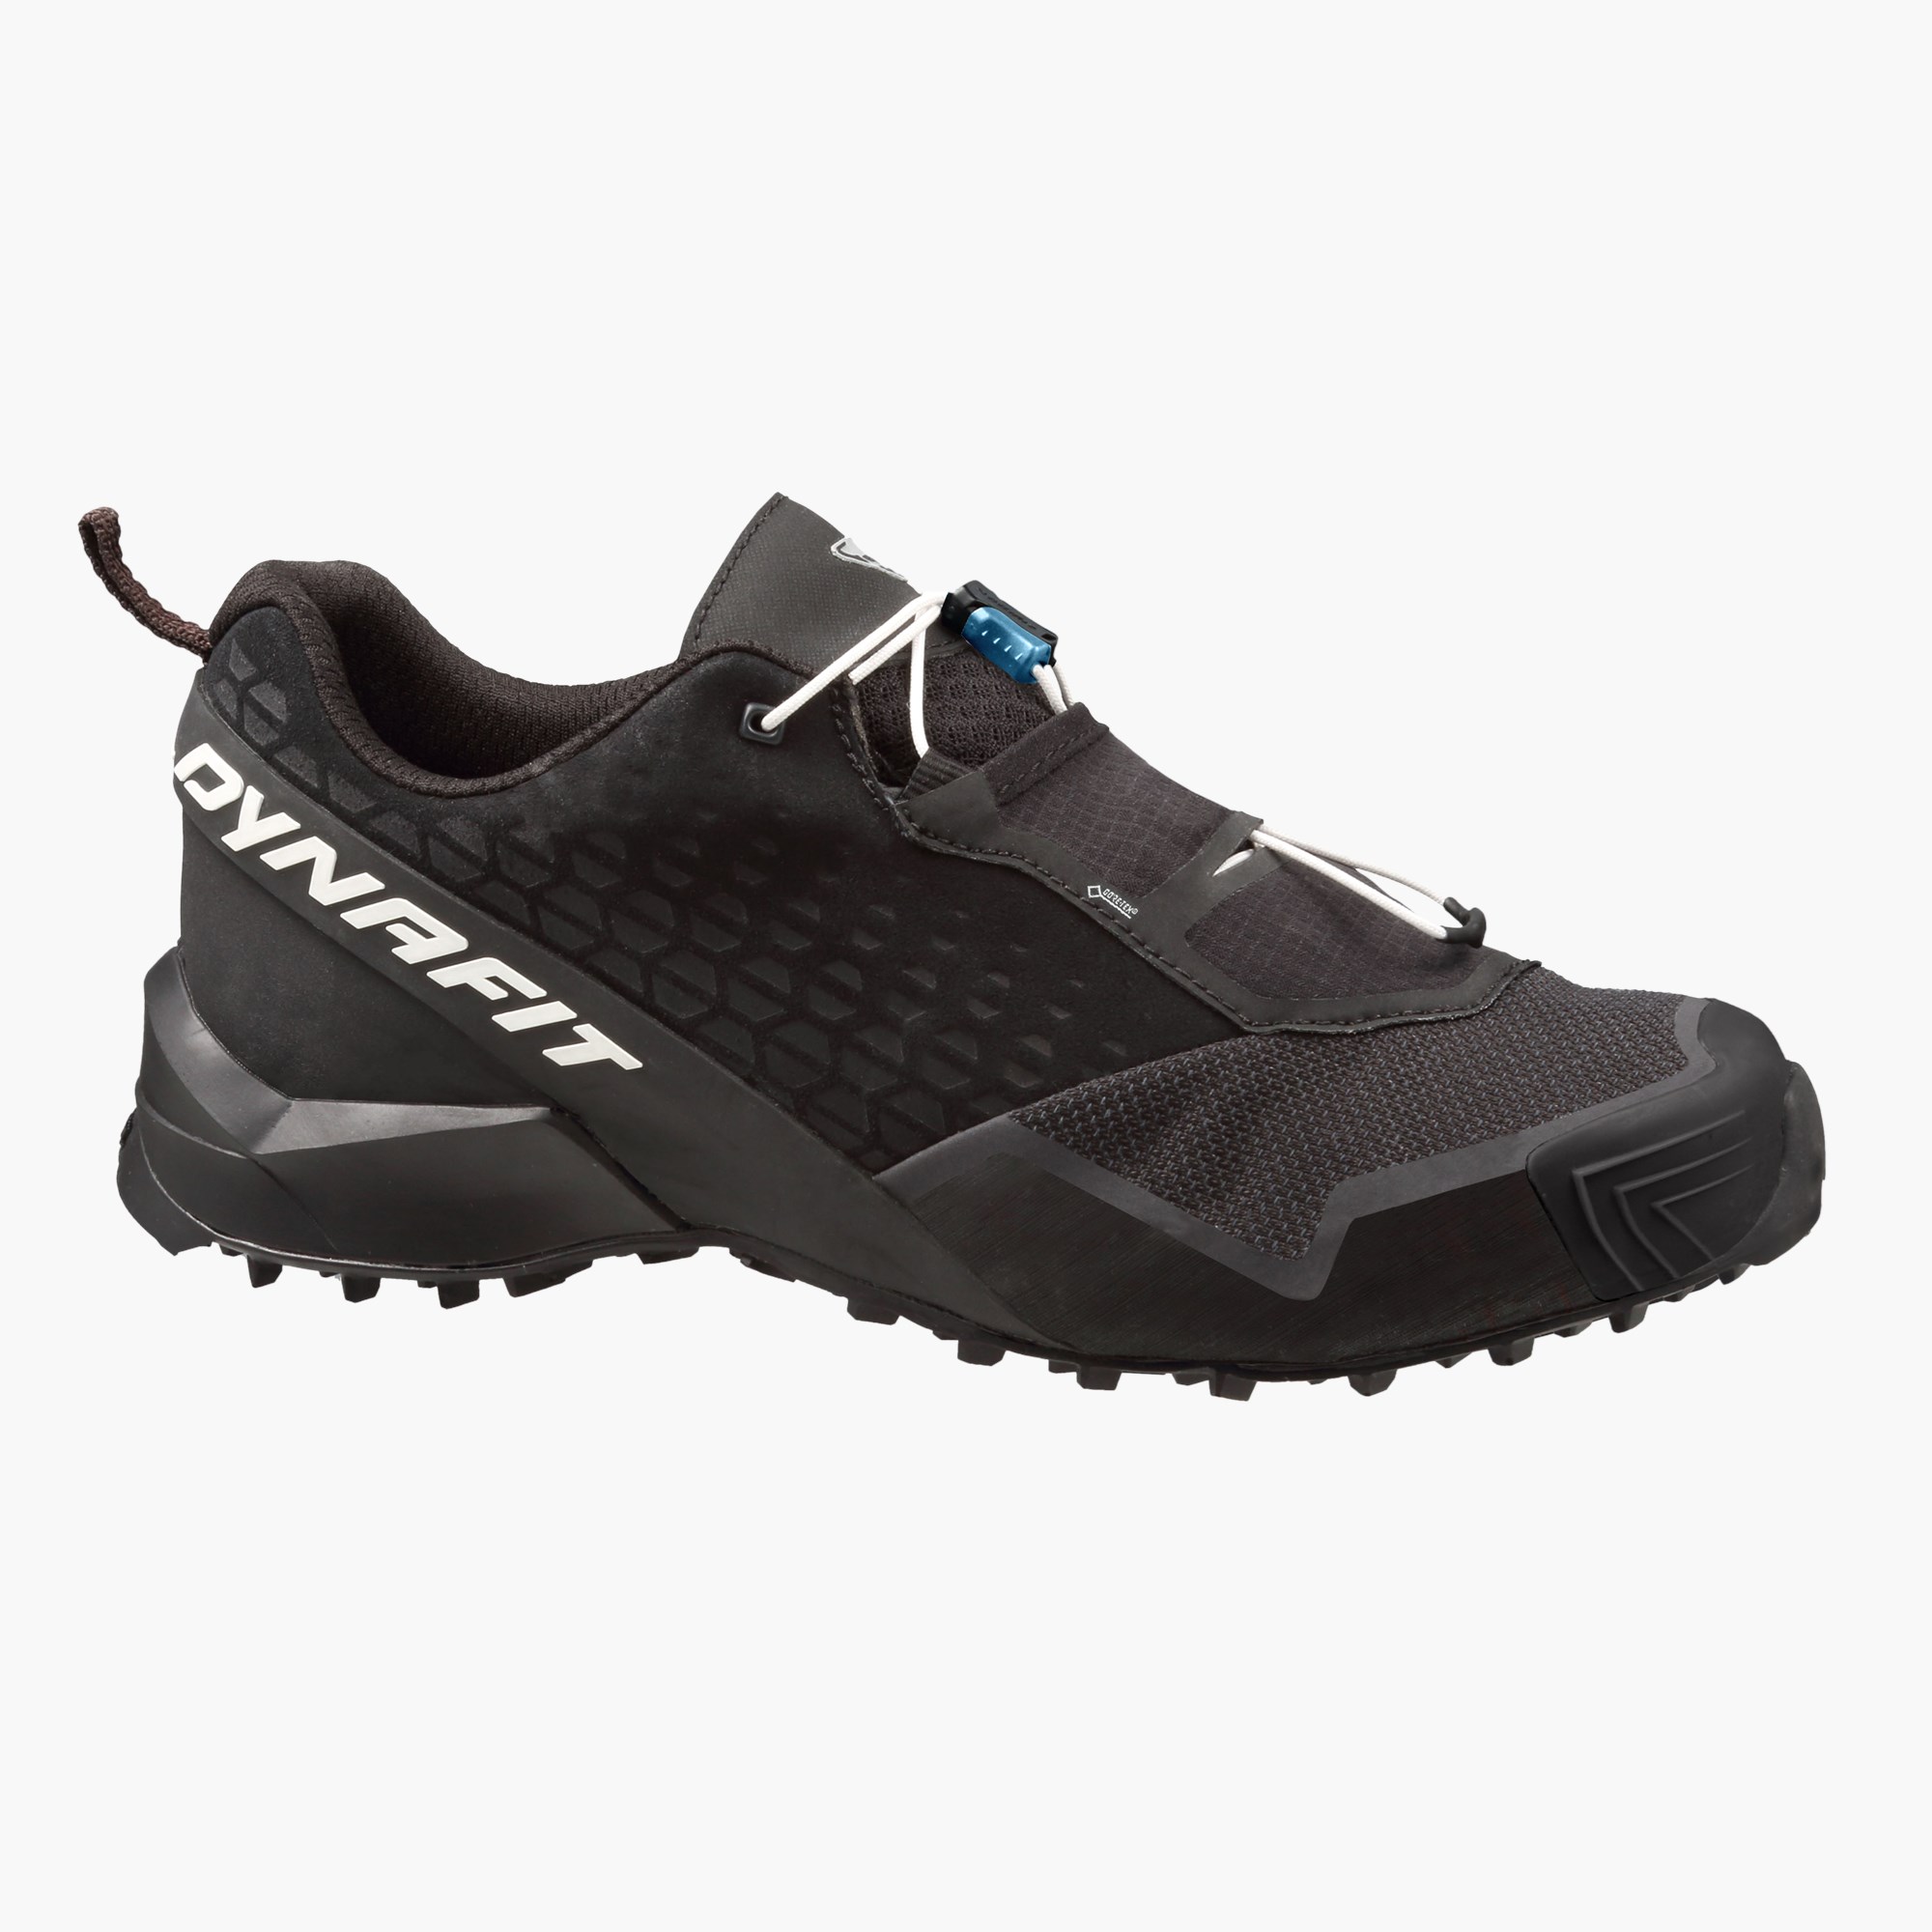 dynafit hiking shoes